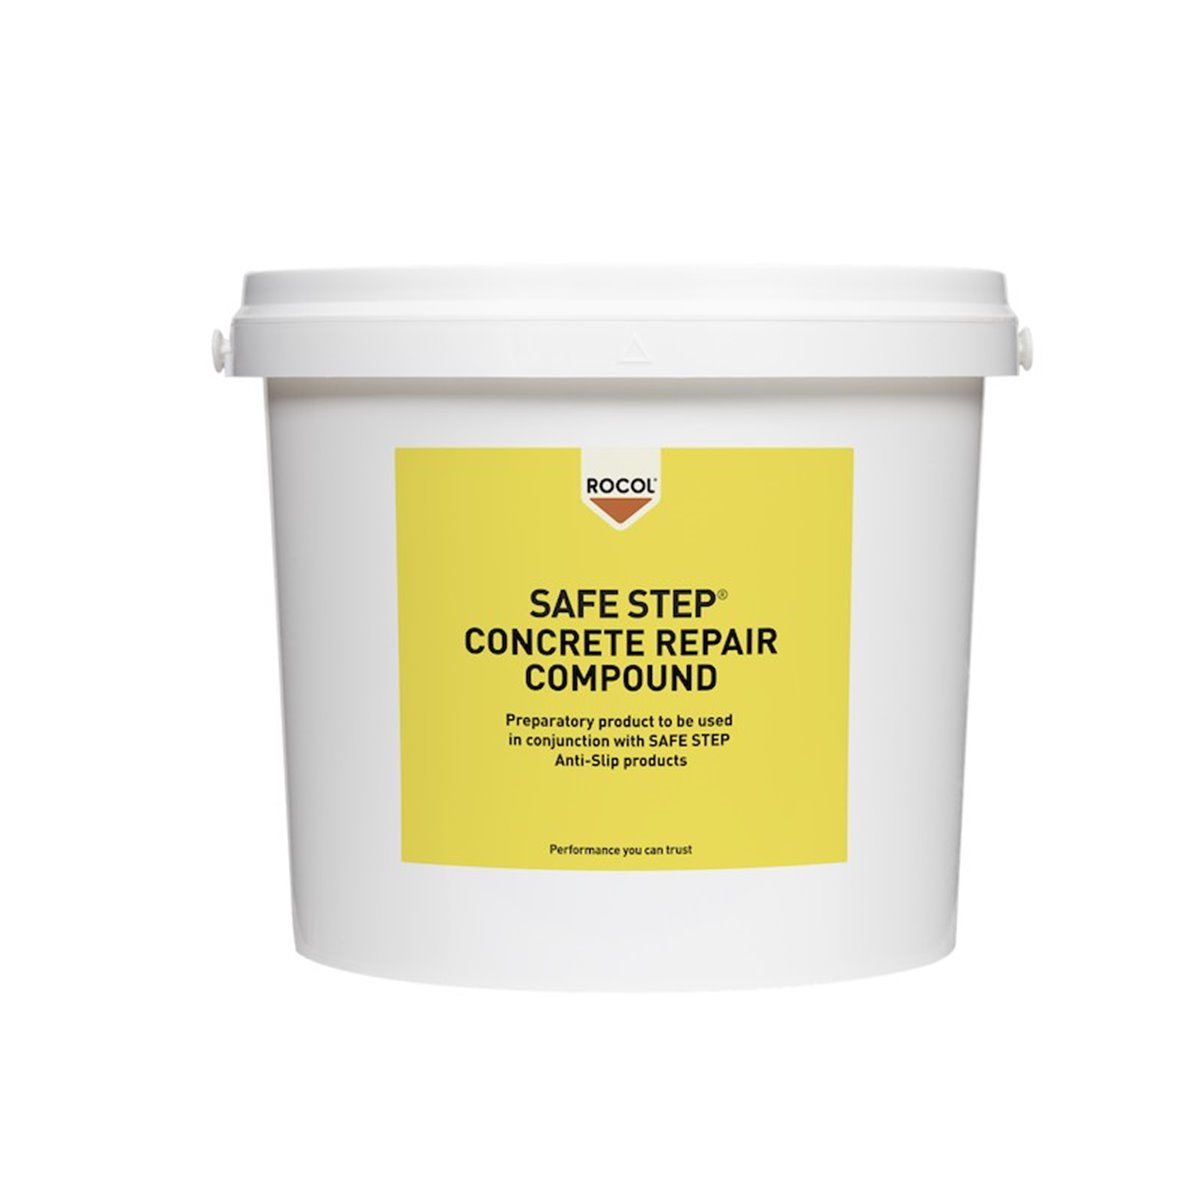 SAFE STEP Concrete Repair Compound Rocol 25kg RS42025